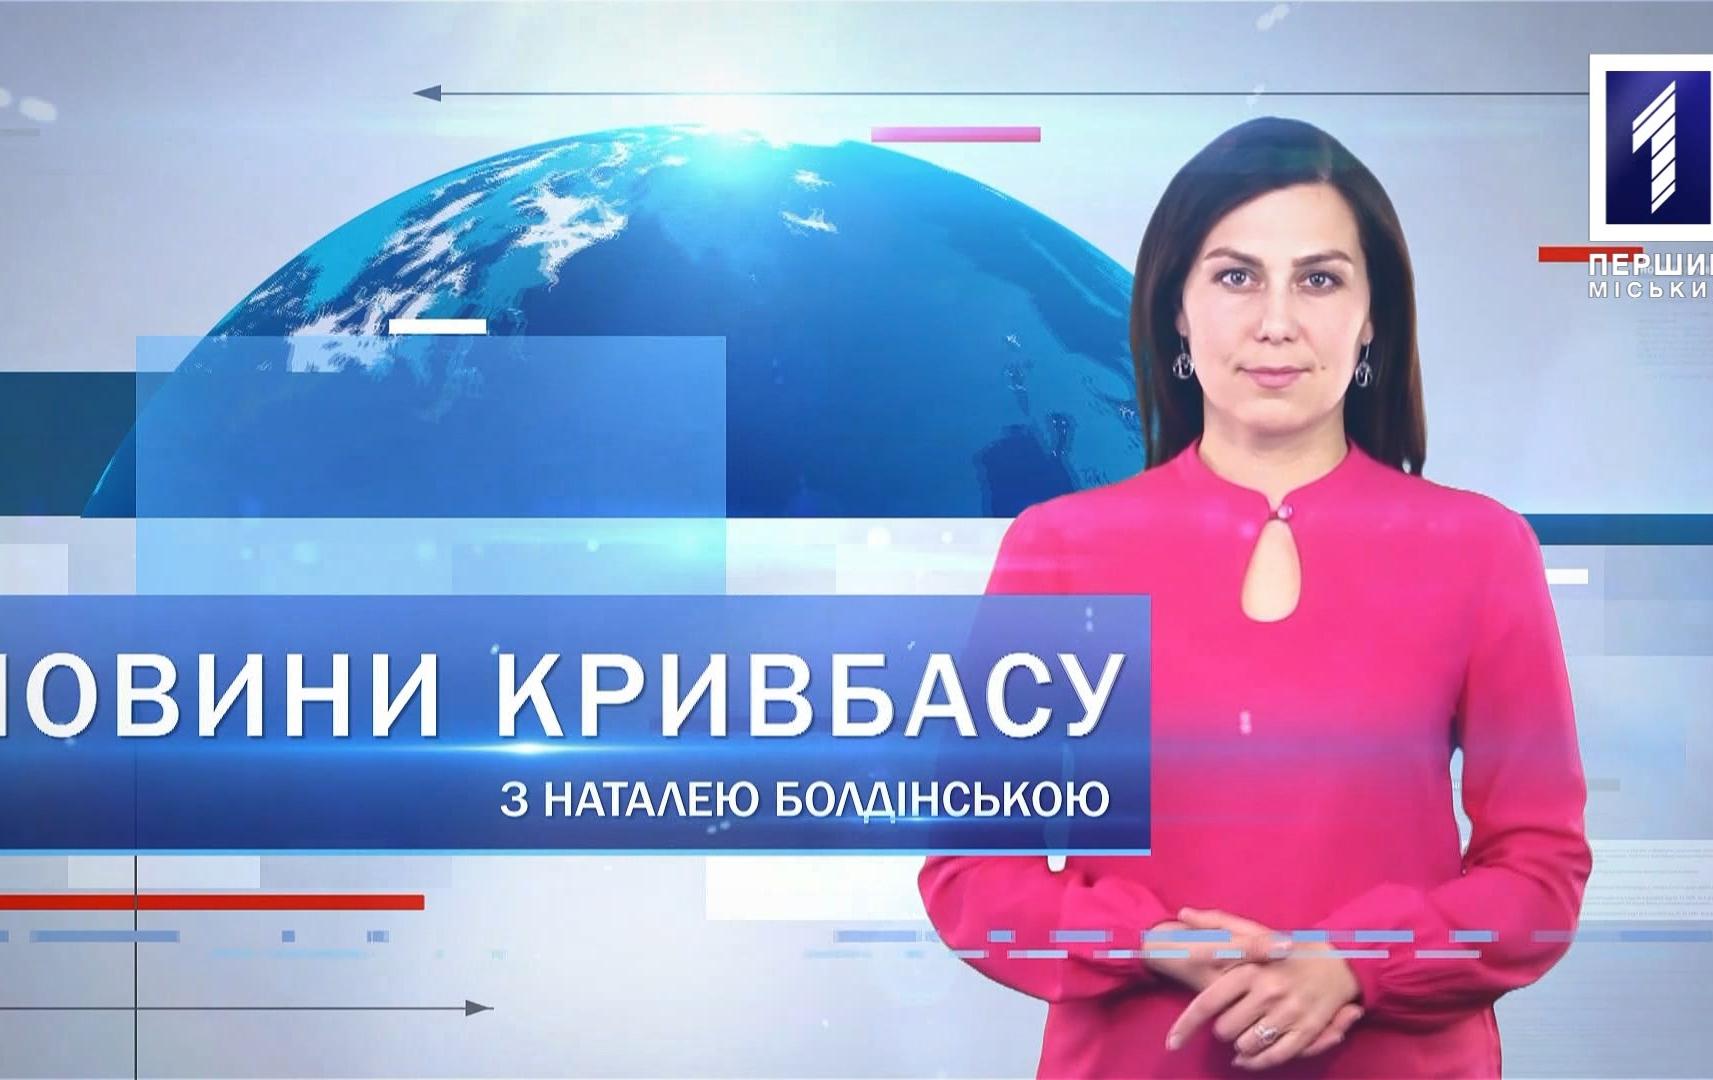 Новини Кривбасу 12 серпня 2020: COVID-19, е-сервіси, смертельна аварія